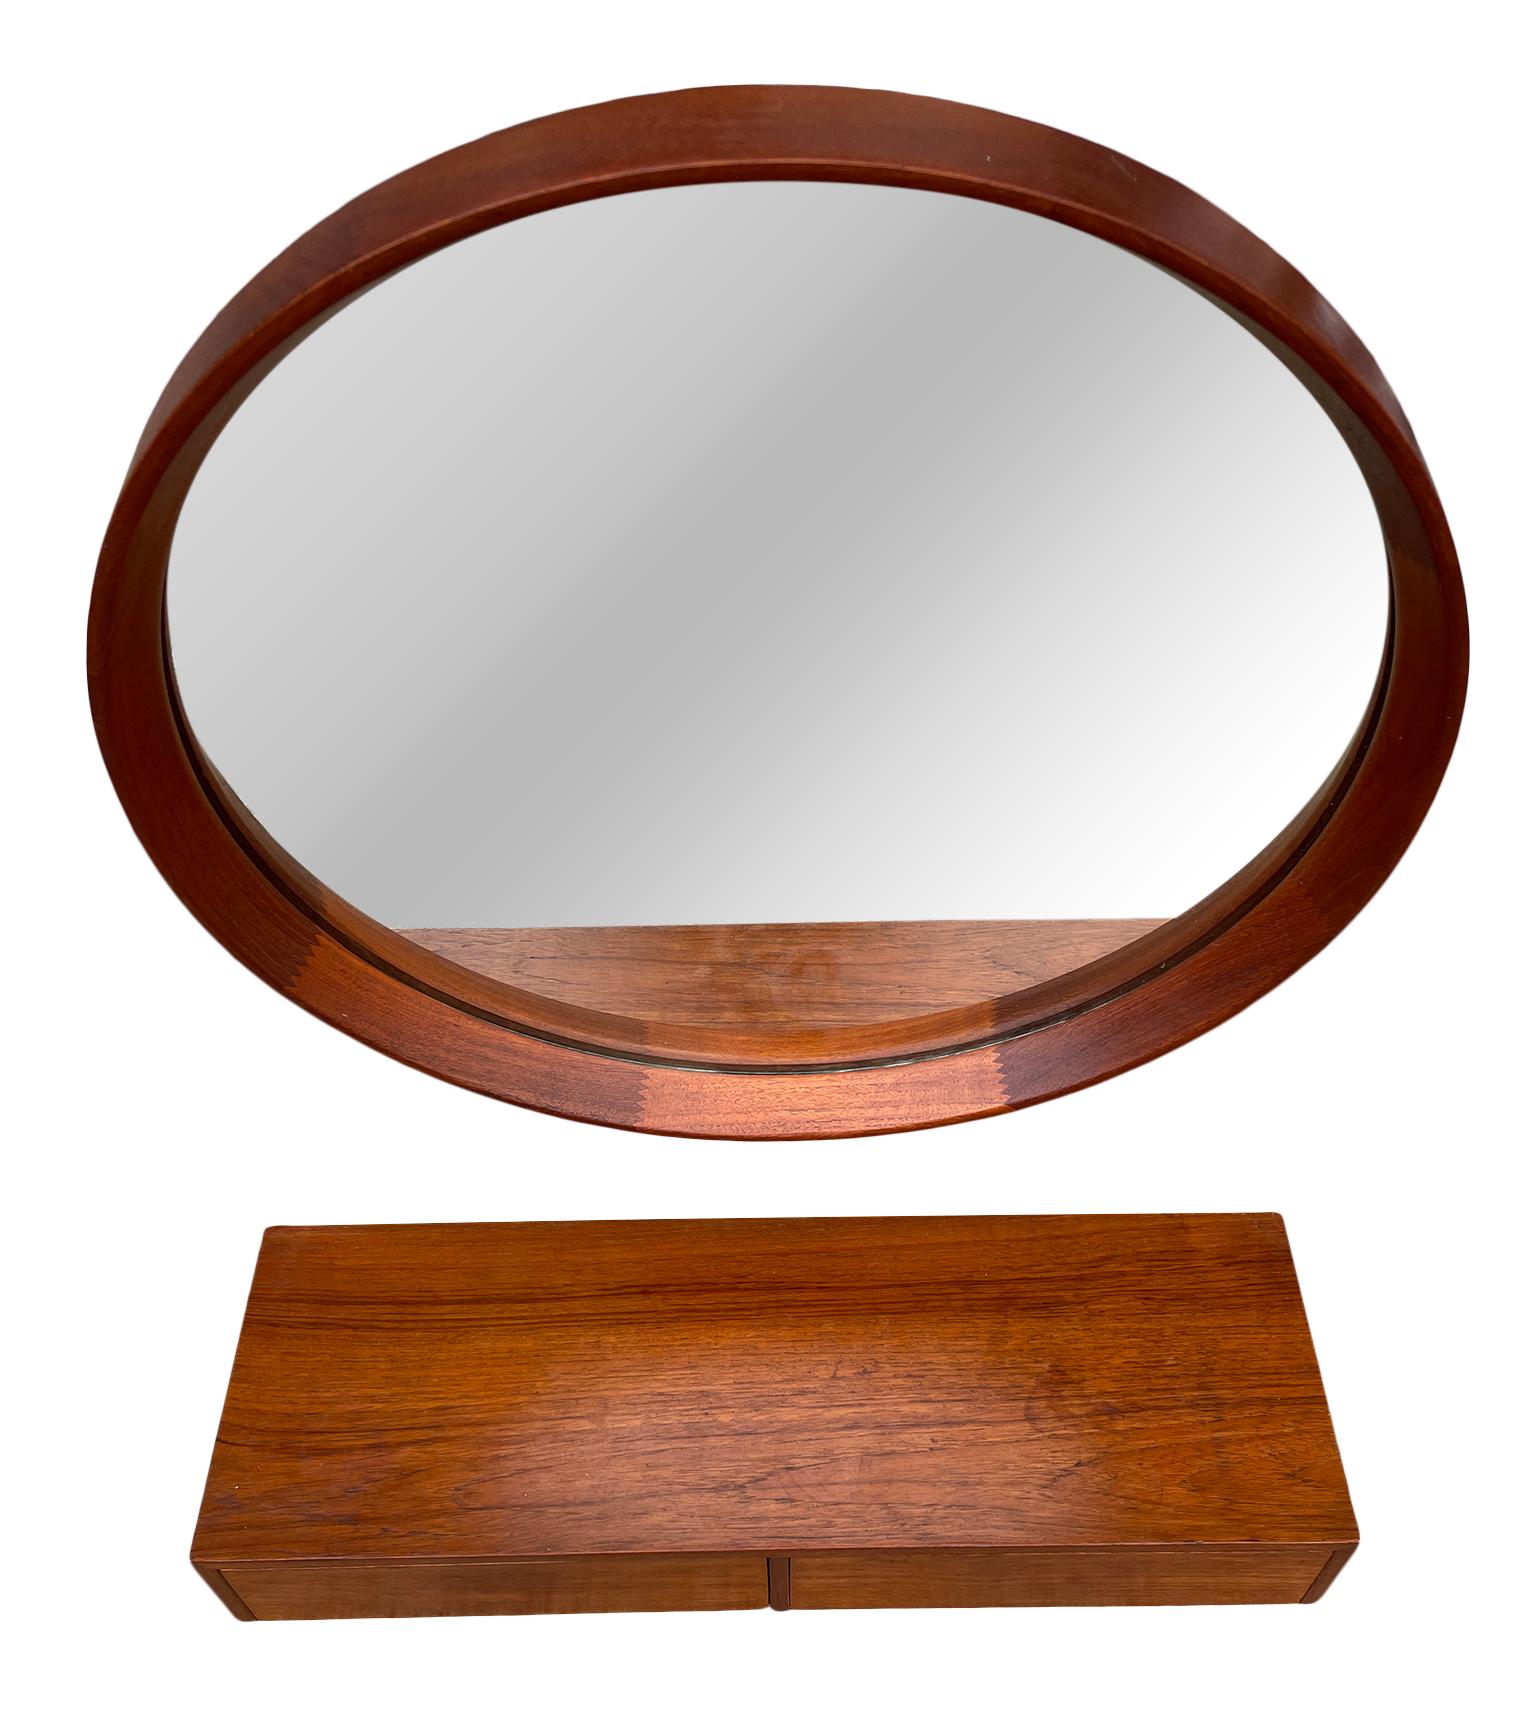 Woodwork Mid-Century Modern Danish Modern Teak Round Mirror with 2 Drawer Vanity